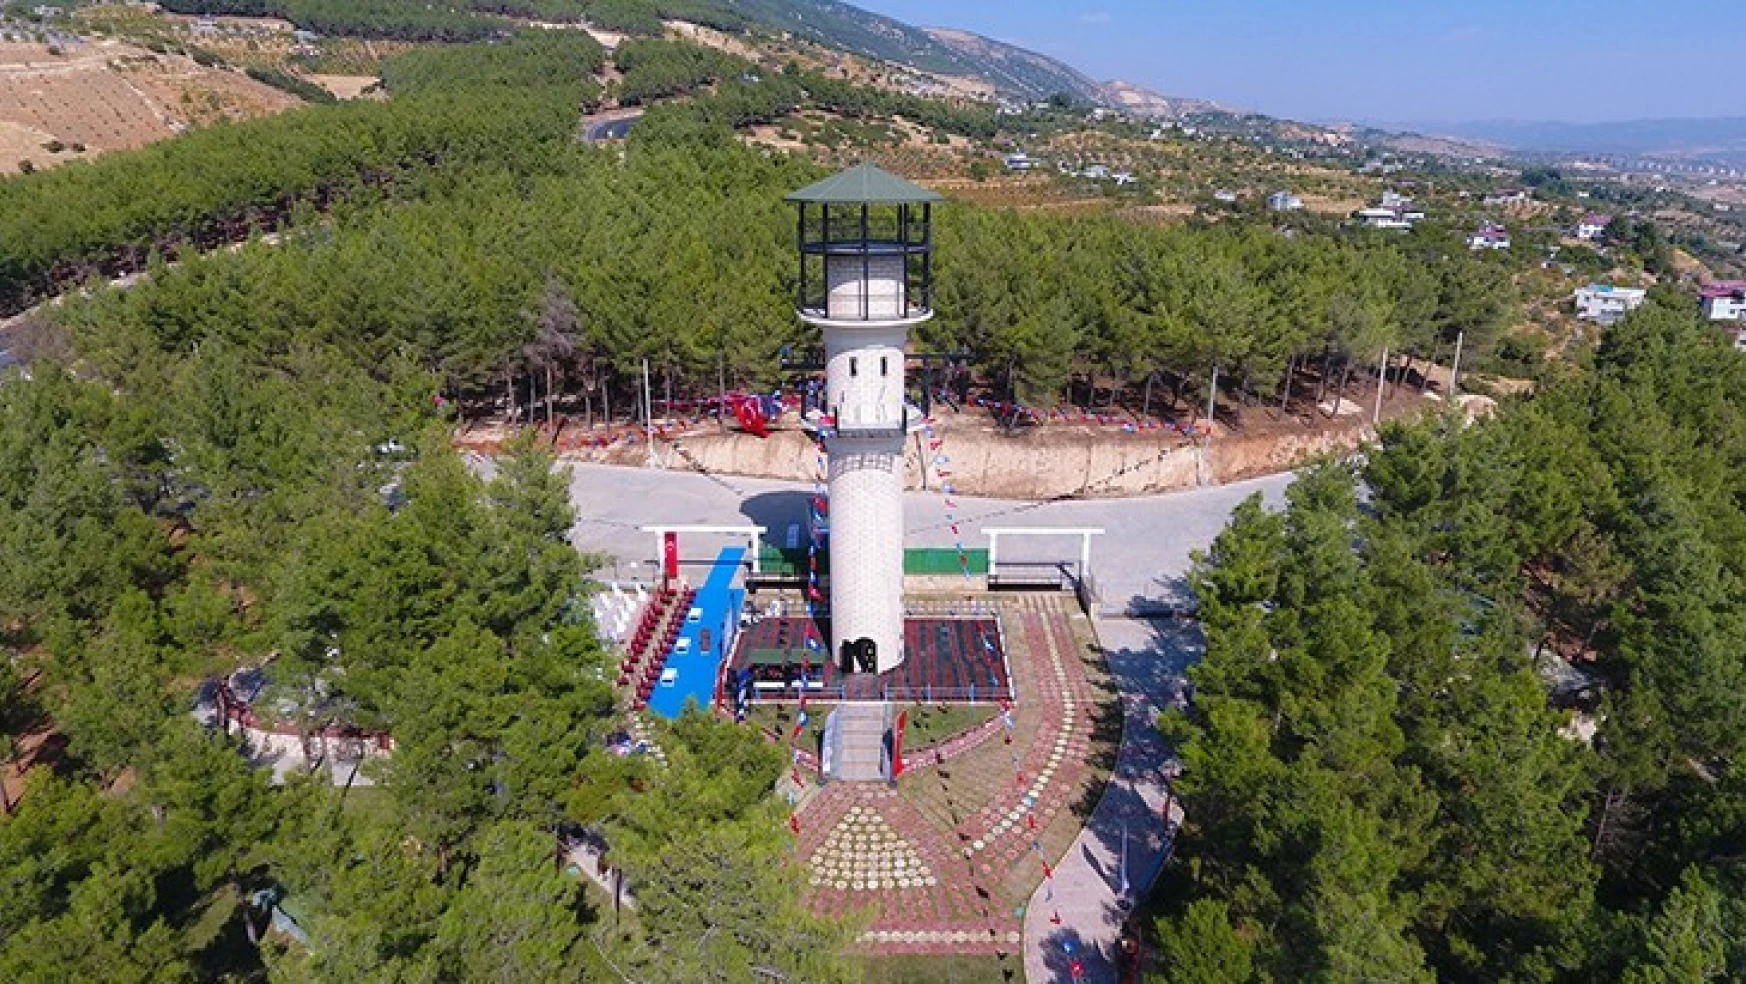 Heyecan bahçesi Dulkadiroğlu'nda açıldı